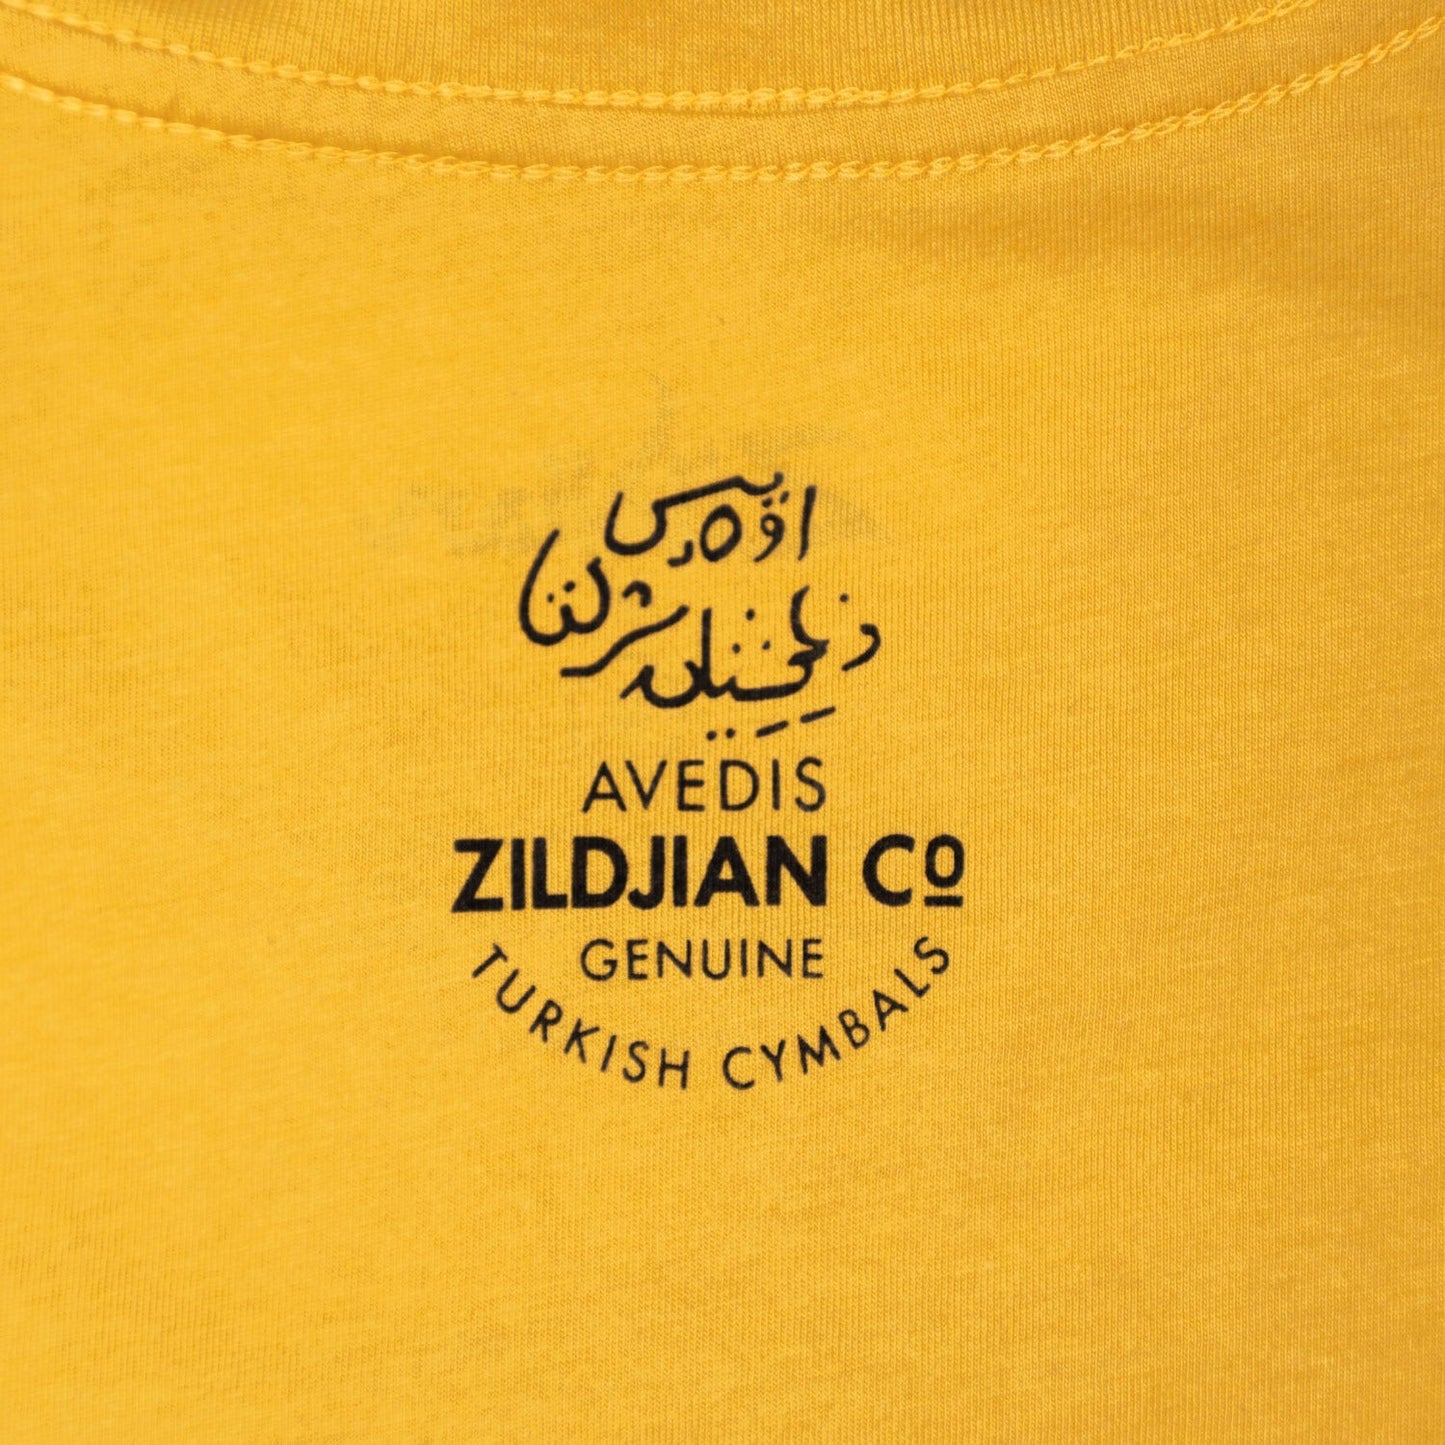 Zildjian Classic Logo Tee (4 Colors)